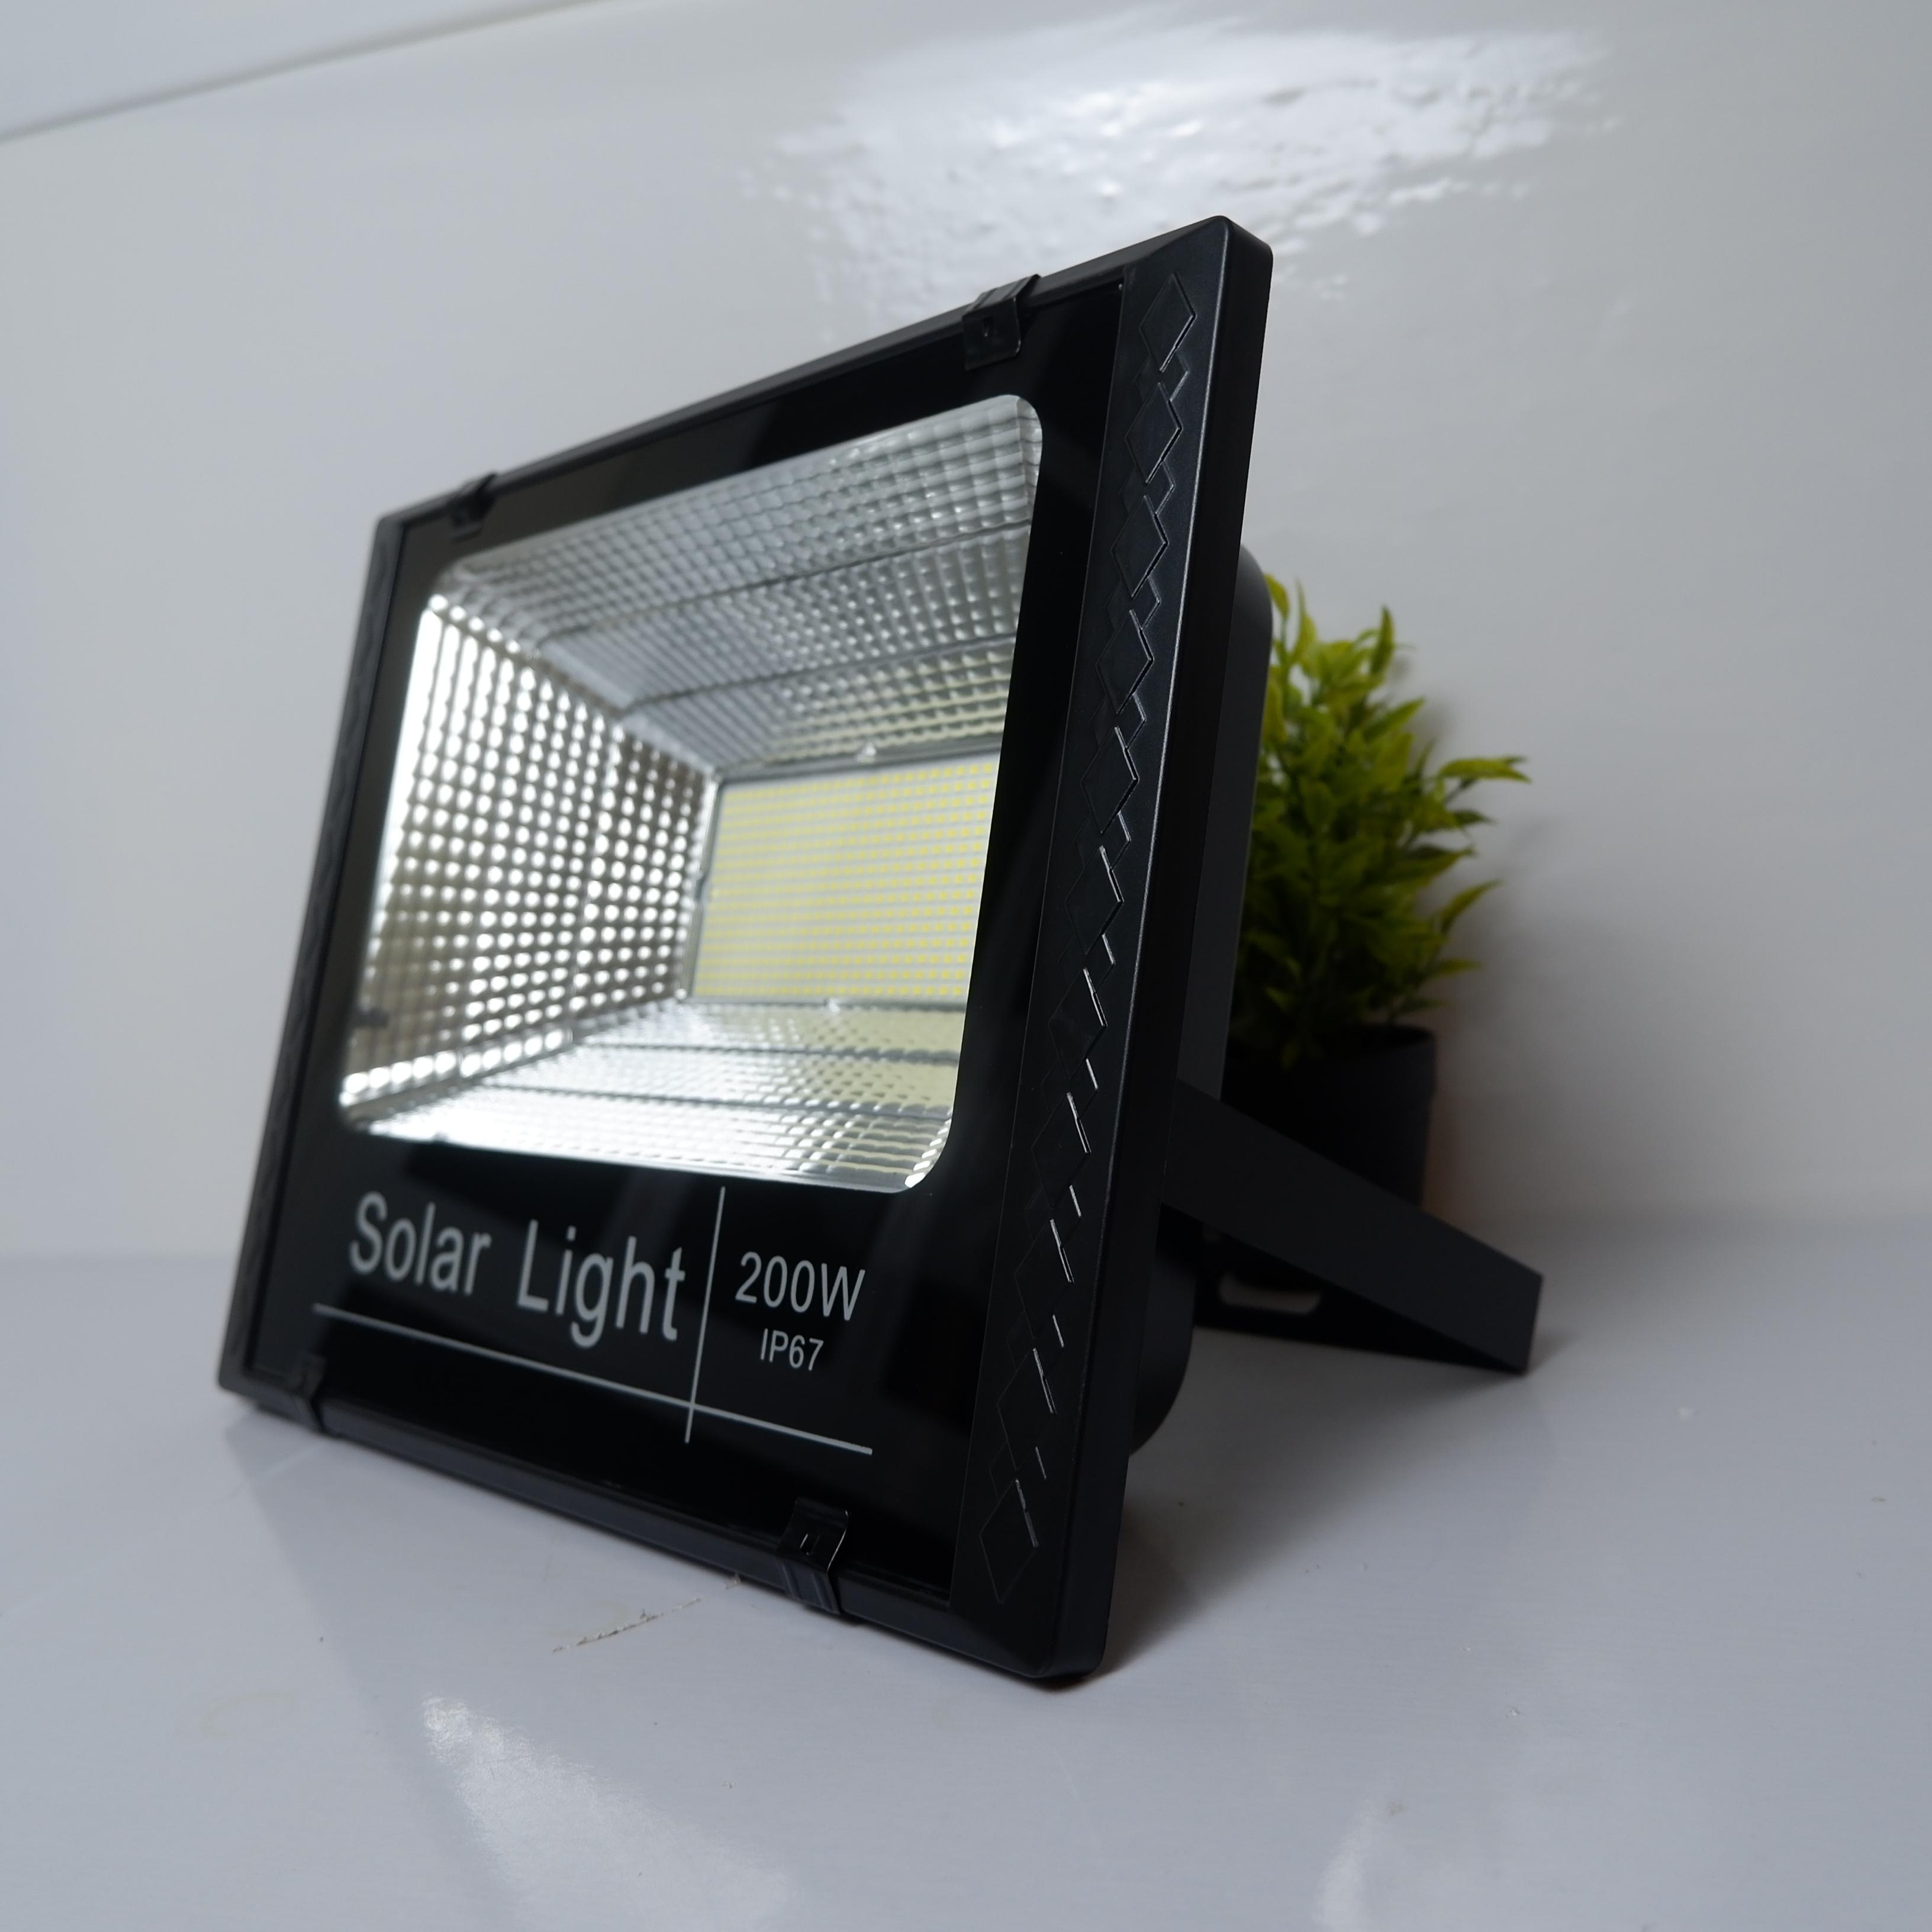 Đèn LED Năng Lượng Mặt Trời 200W - Đèn Pha Led Có Điều Khiển Từ Xa - tiết kiệm điện năng và bảo vệ môi trường sống